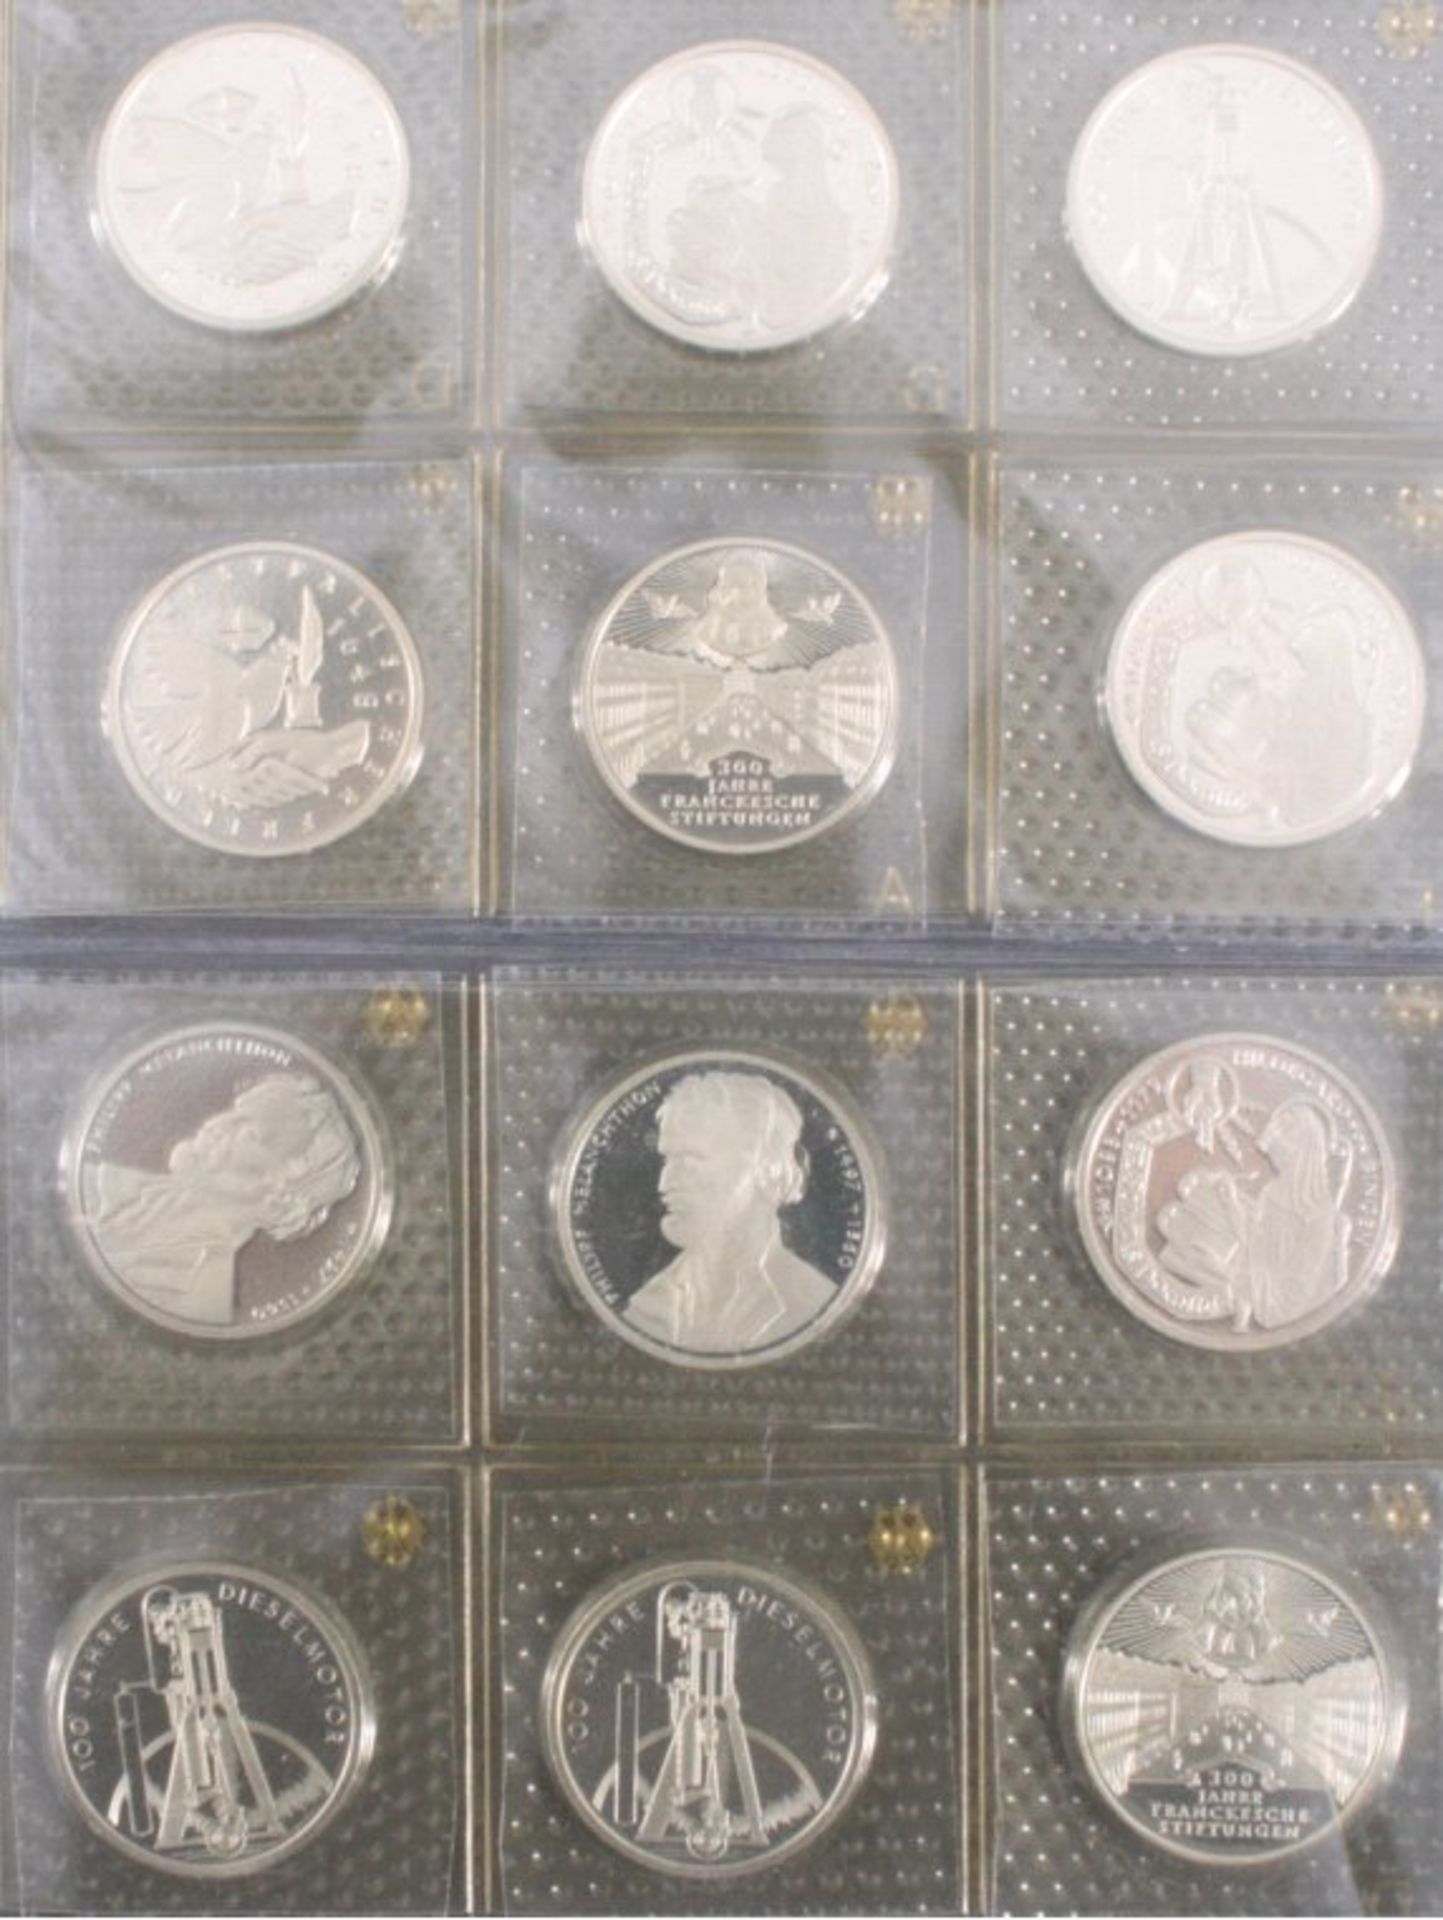 12 x 10 DM Gedenkmünzen pp orginal verschweißt3 x Hildegard von Bingen2 x westfälischer Frieden3 x